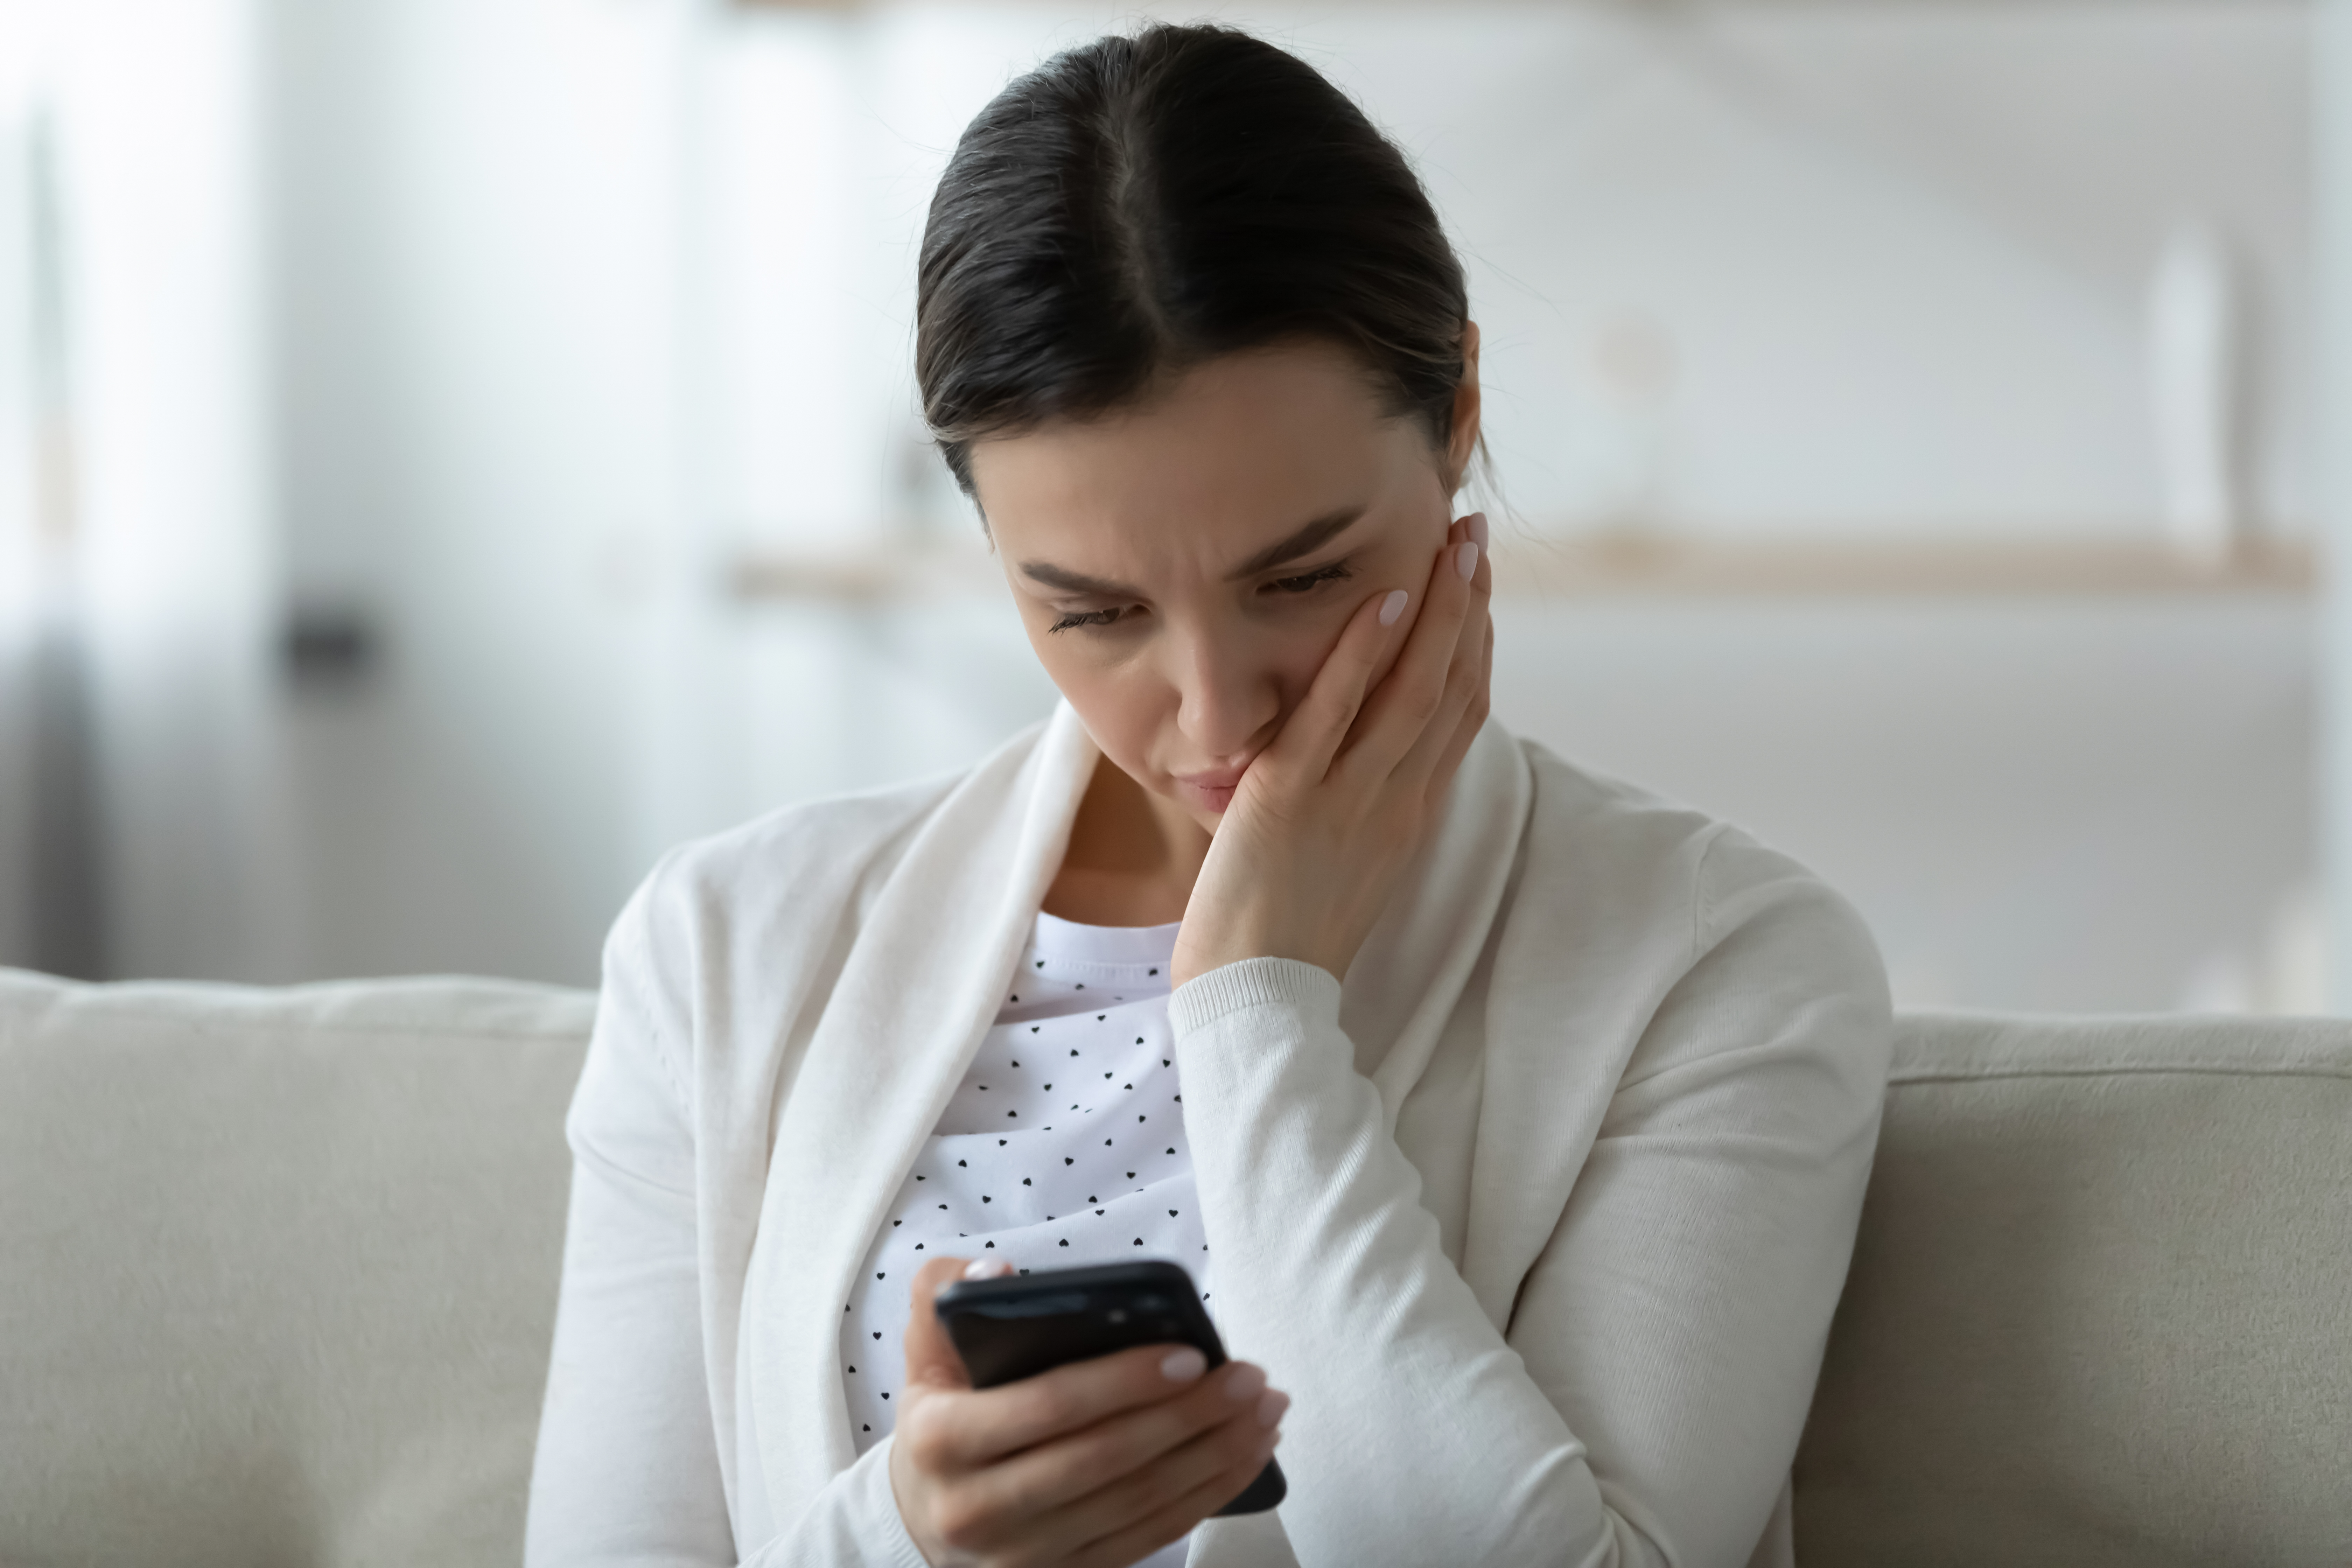 Una mujer angustiada sujetando y mirando su smartphone | Foto: Shutterstock